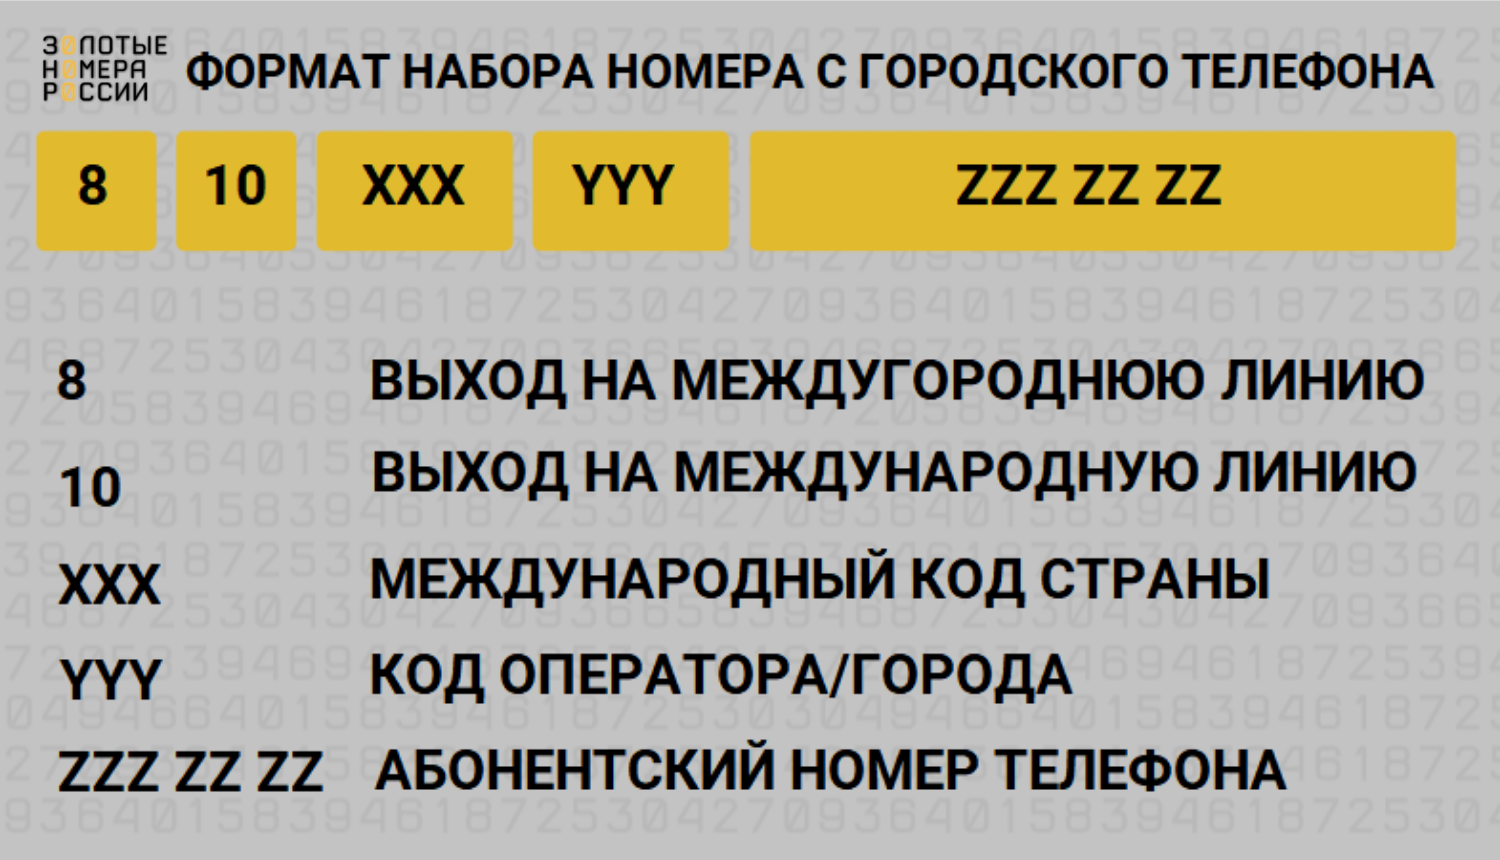 Формат набора номера с городского телефона в России